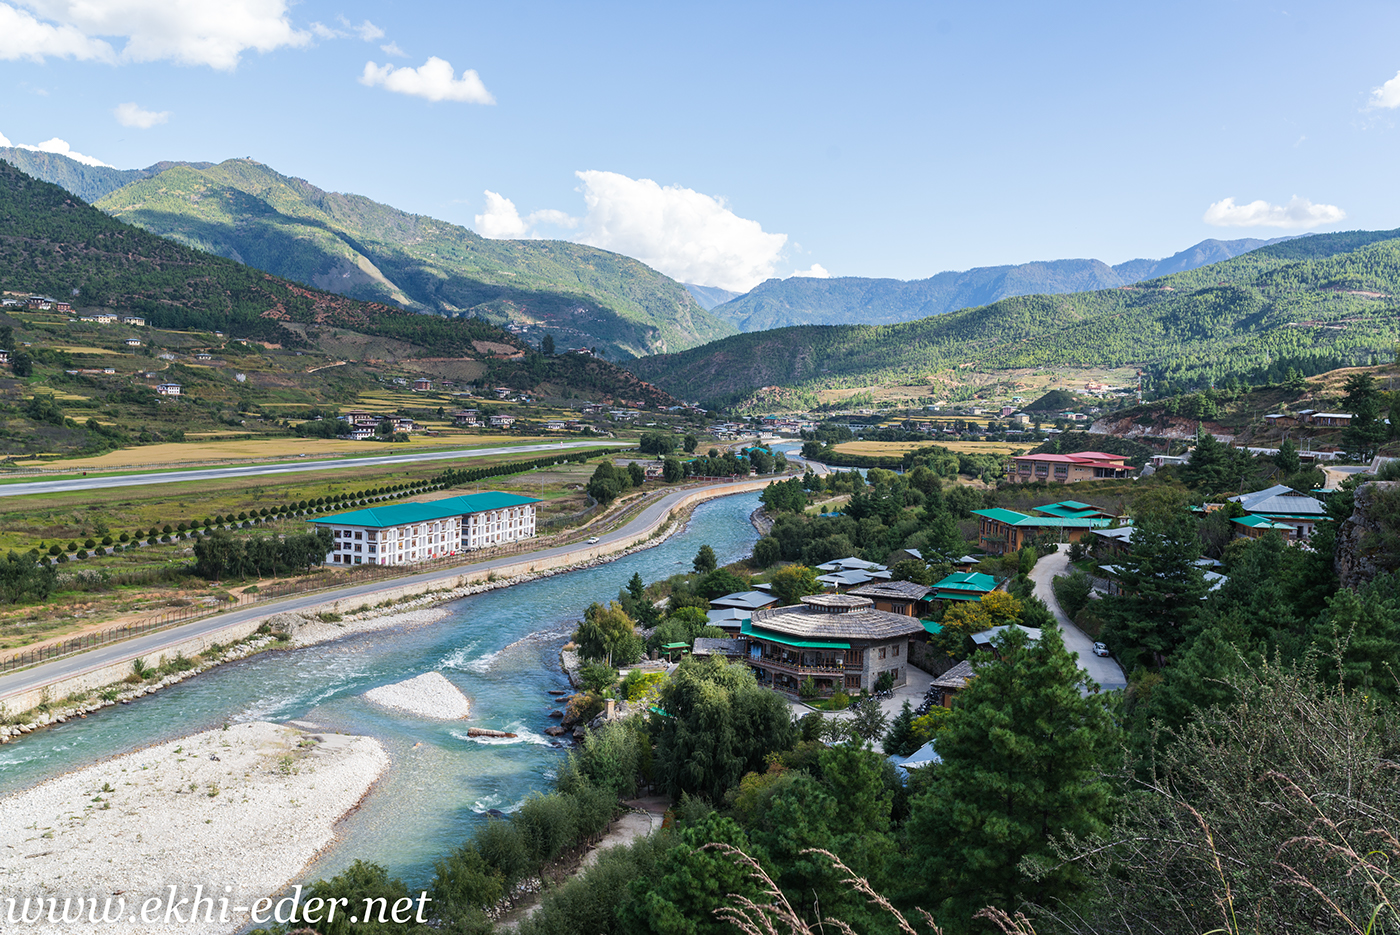 bhutan paro airport Travel tourism culture Transport Landscape Nature